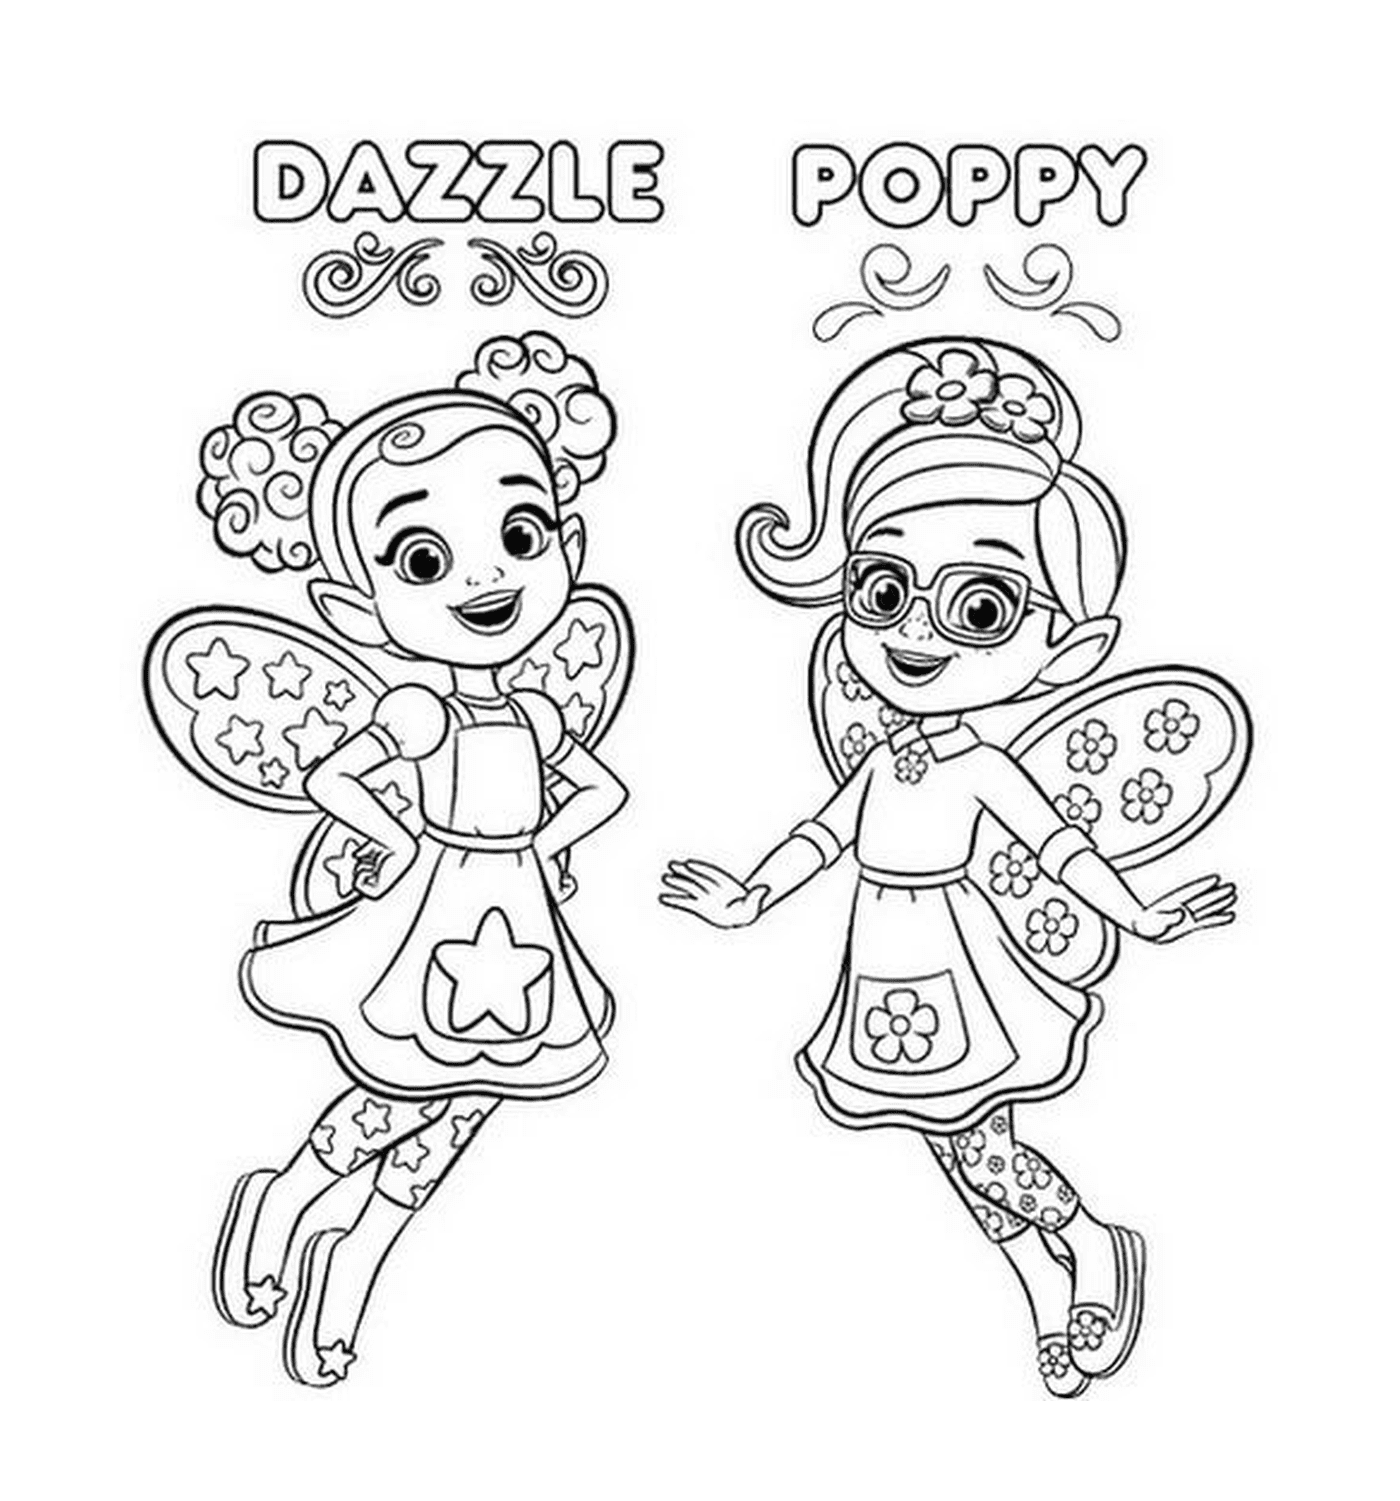  Le bambine Dazzle e Poppy di Butterbean Café 